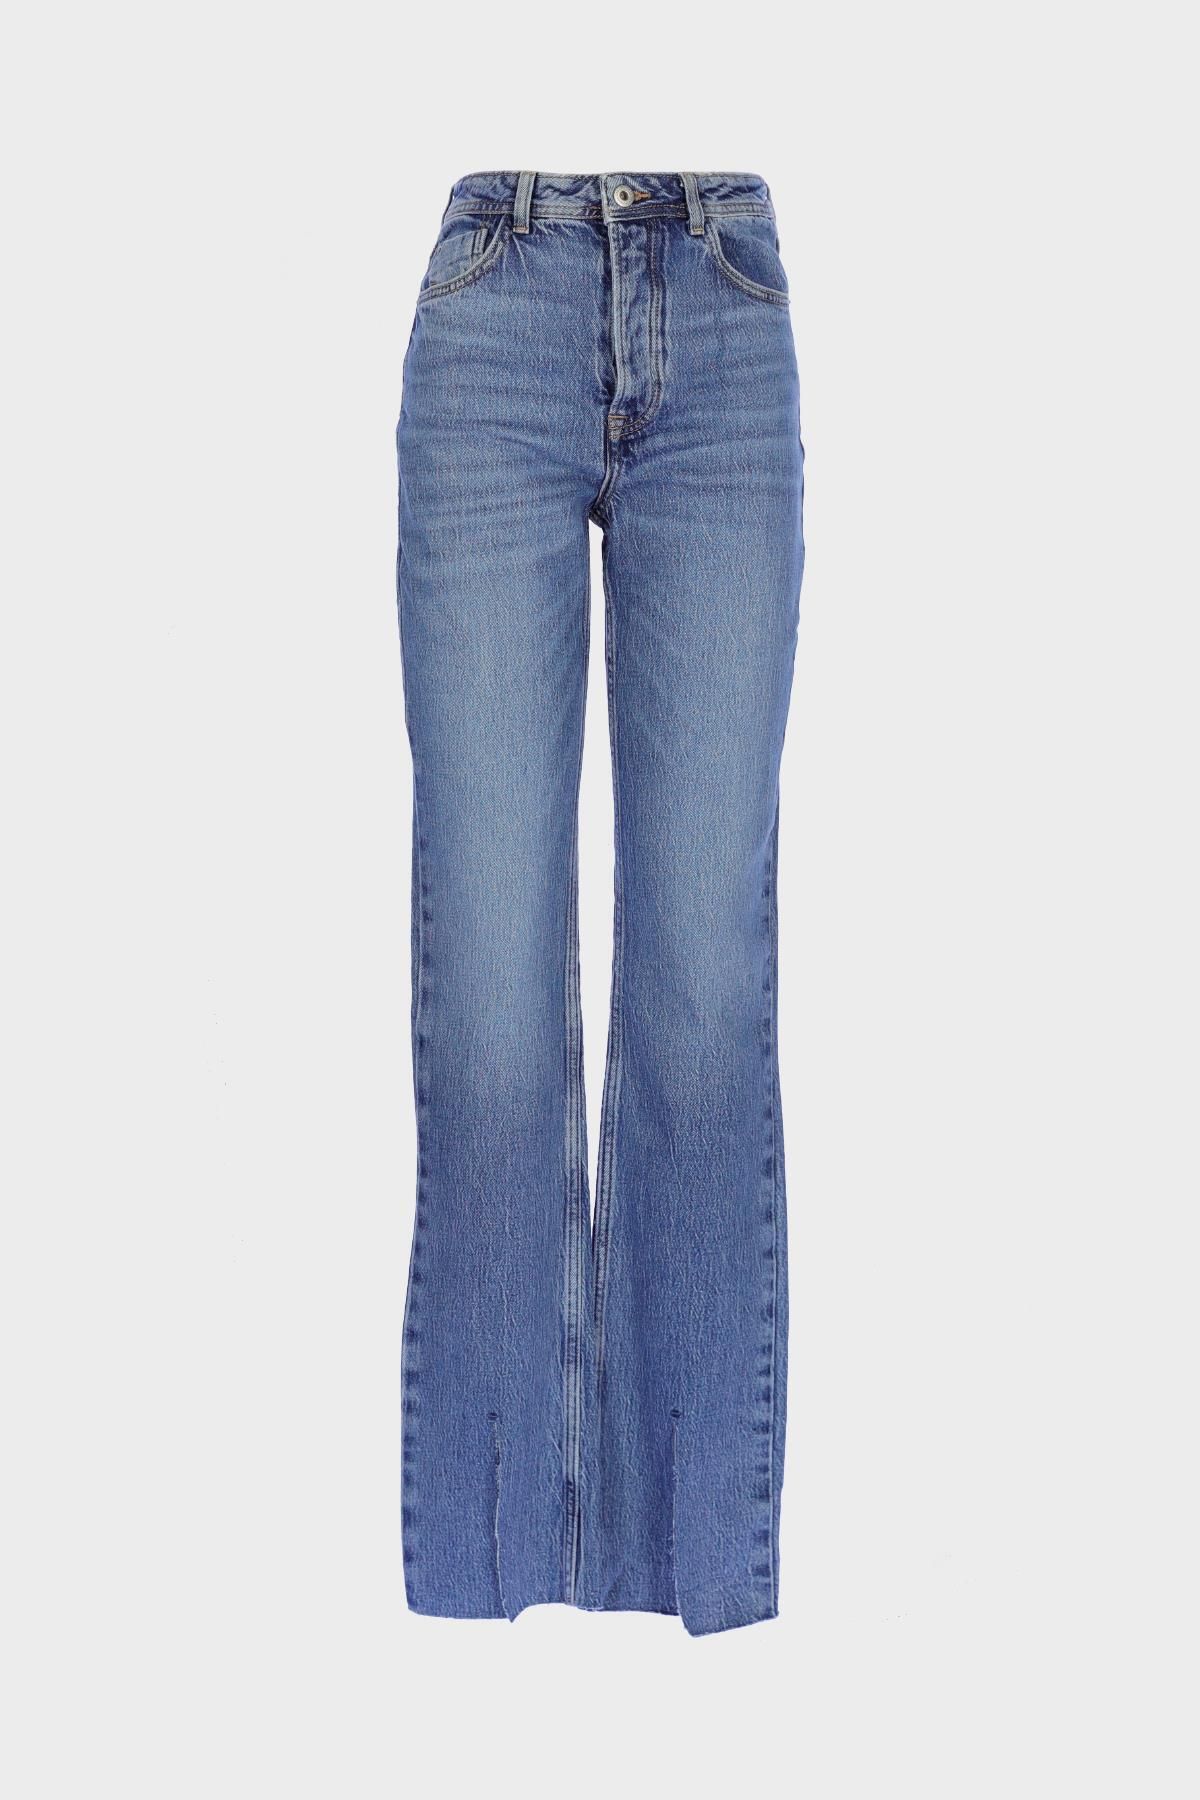 CROSS JEANS Orta Mavi Slim Straight Paçası Yırtmaçlı Patı Fermuarlı Jean Pantolon C 4556-021